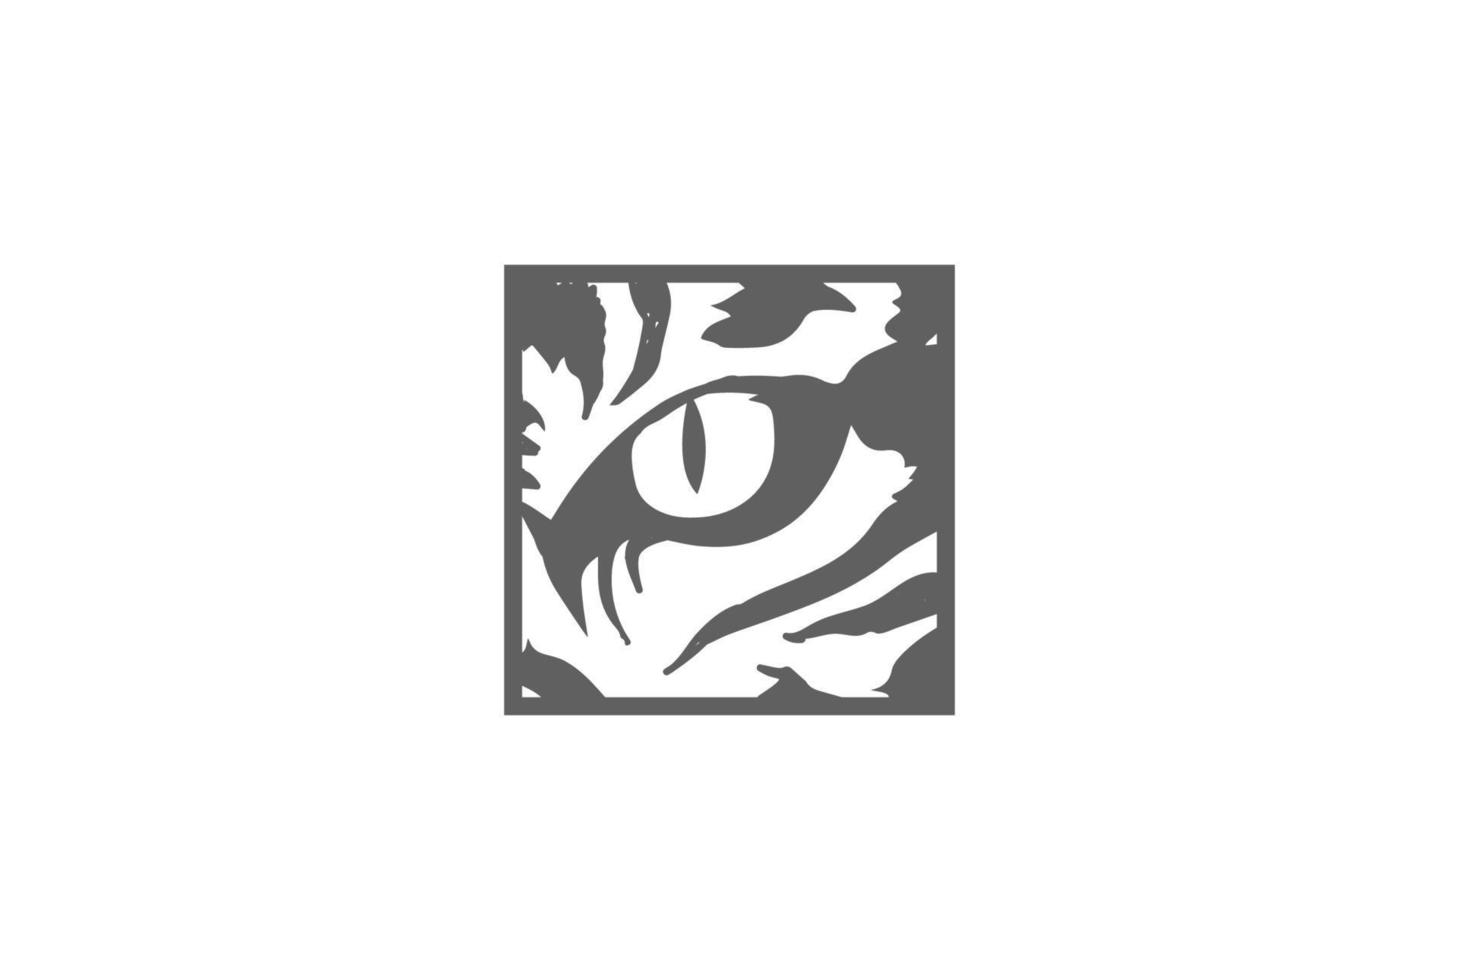 tigre selvaggia leopardo giaguaro puma pantera occhio per la fauna selvatica safari logo design vector